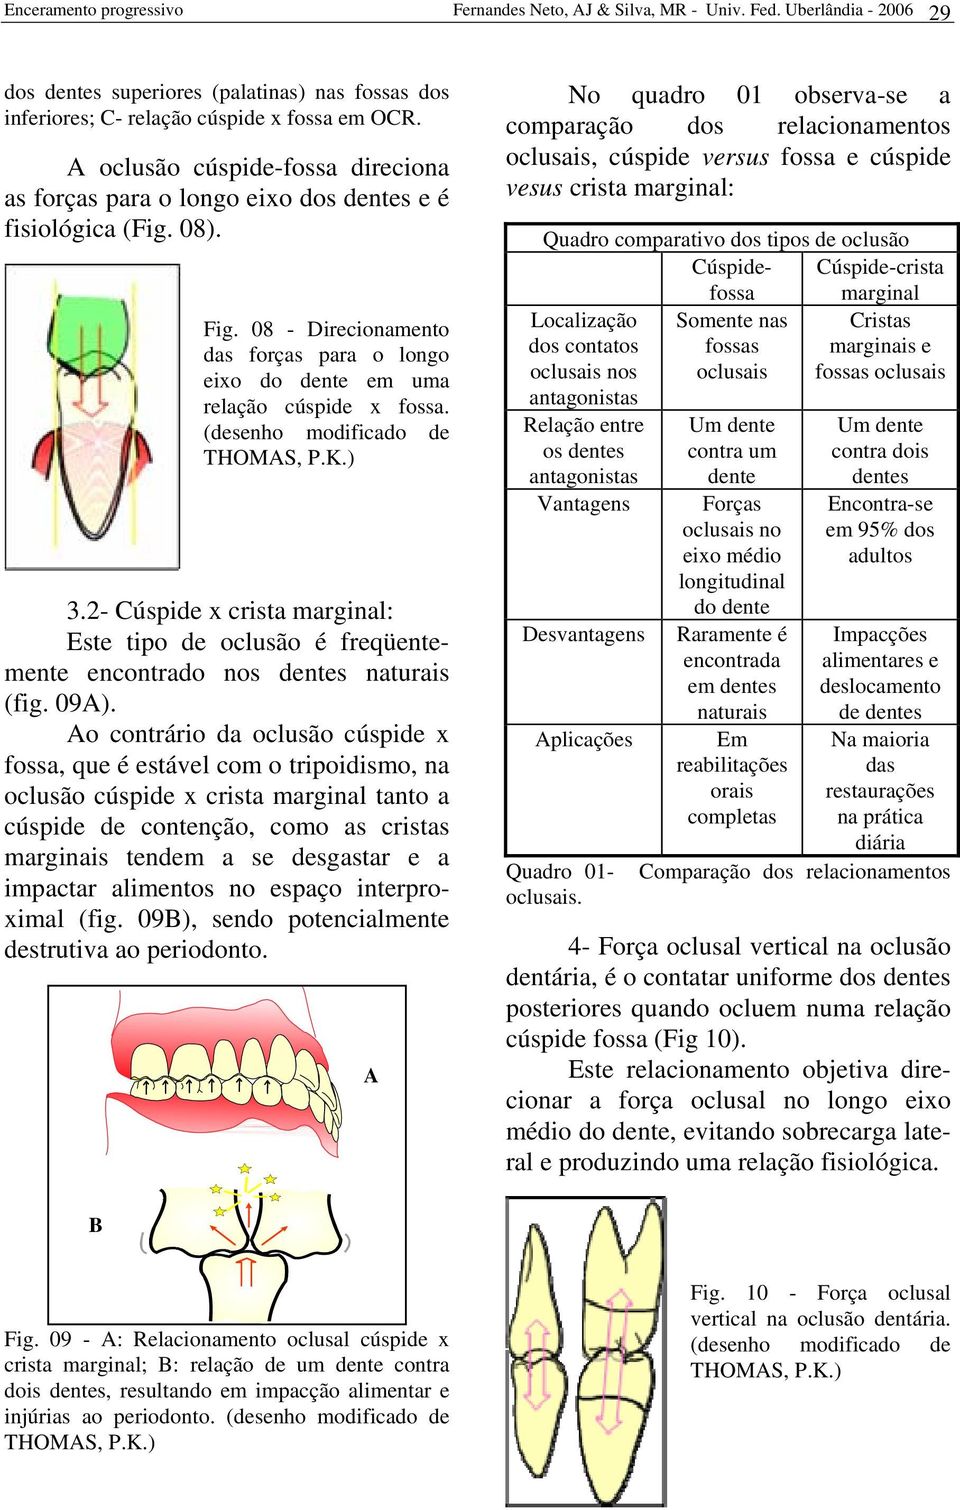 (desenho modificado de THOMAS, P.K.) 3.2- Cúspide x crista marginal: Este tipo de oclusão é freqüentemente encontrado nos dentes naturais (fig. 09A).